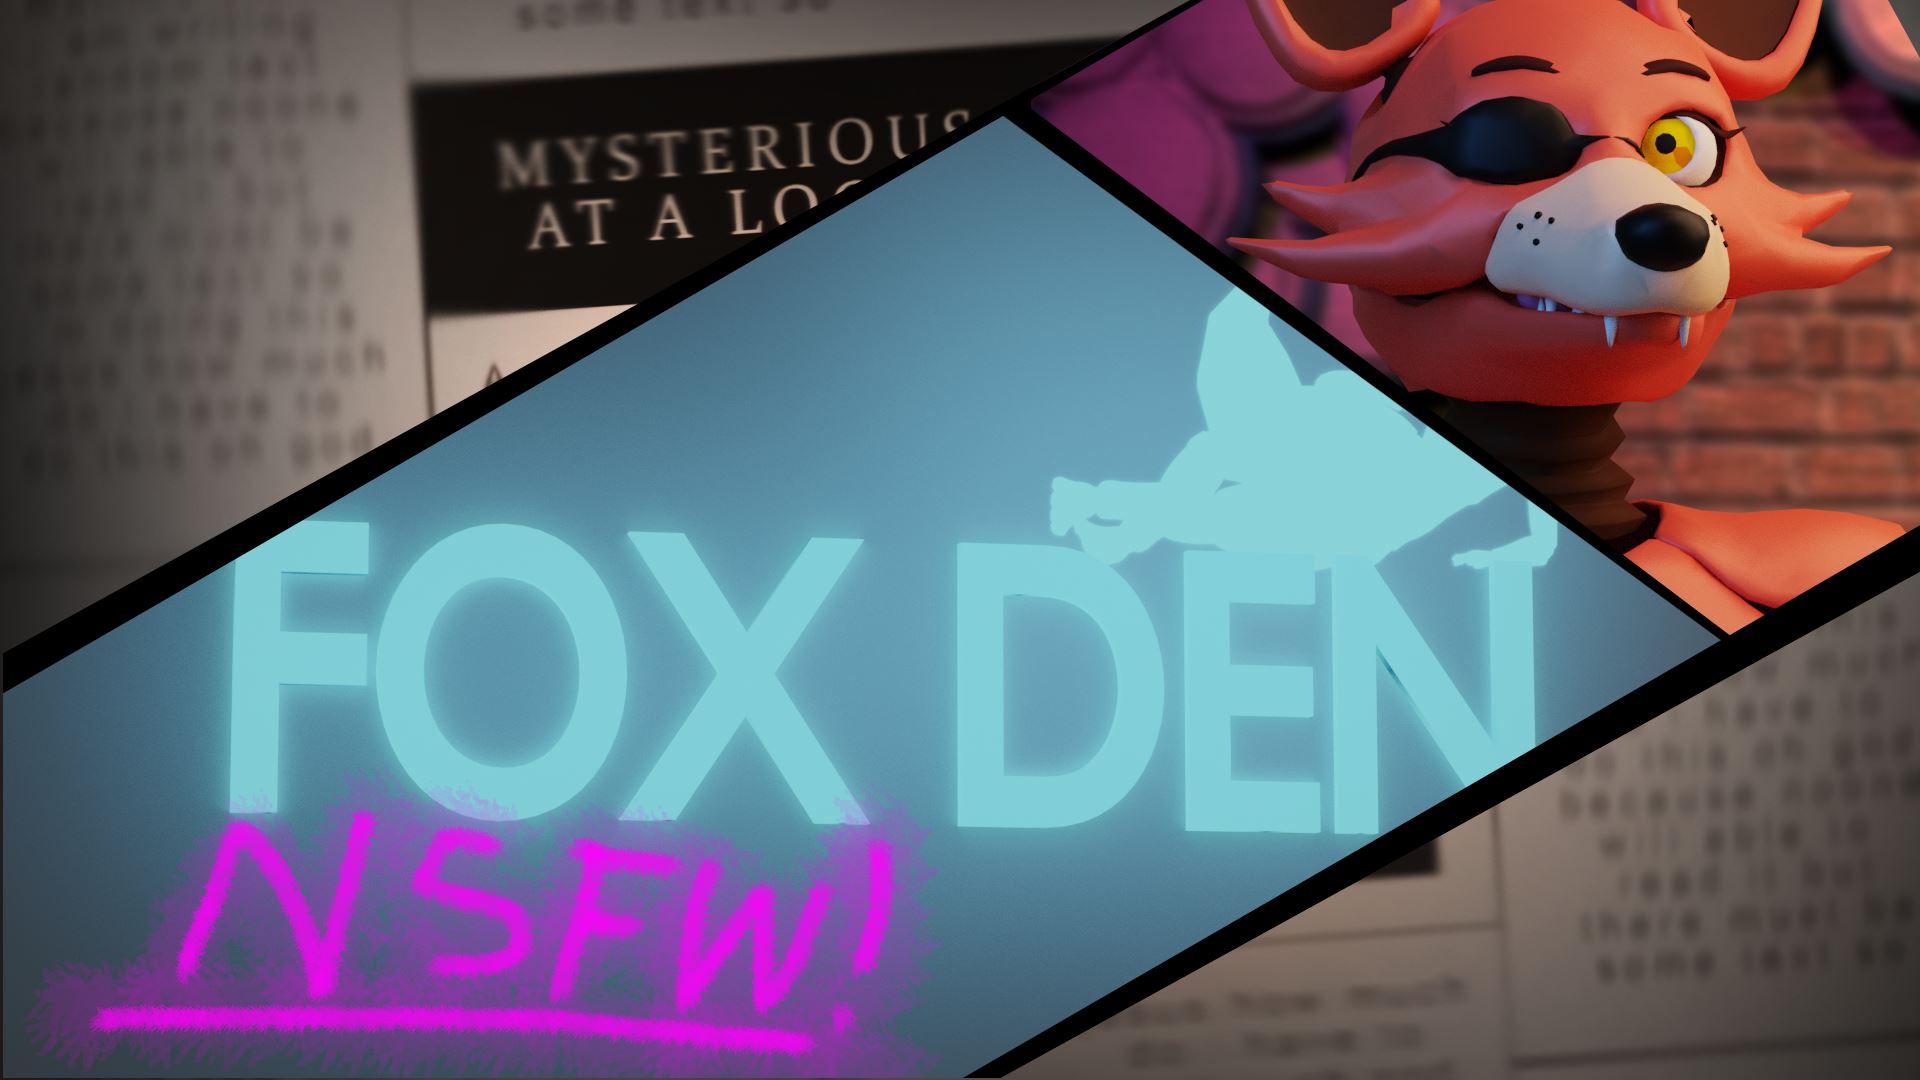 Fox Den Remake porn xxx game download cover